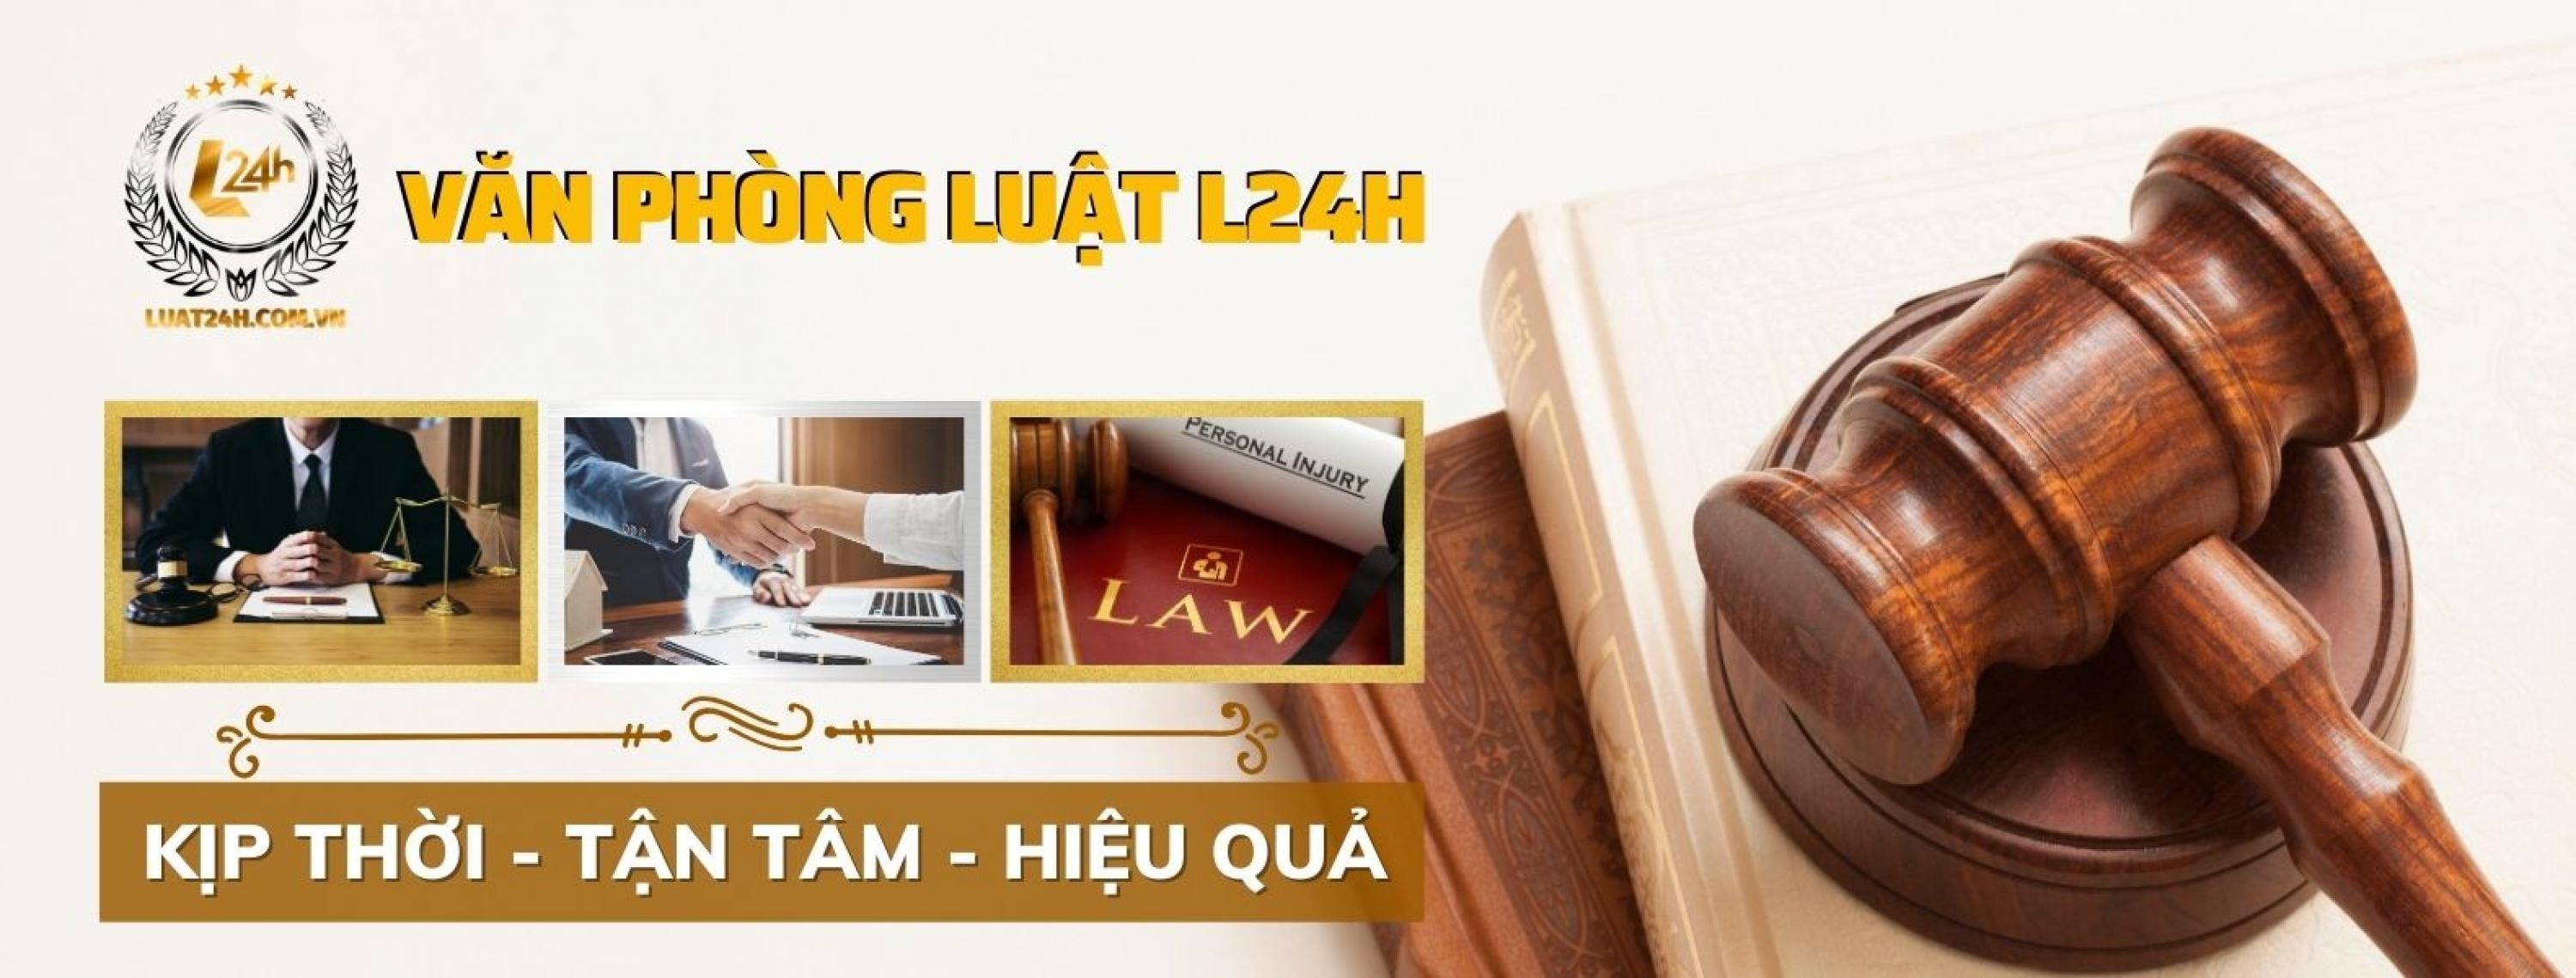 Văn Phòng Luật L24H cover photo